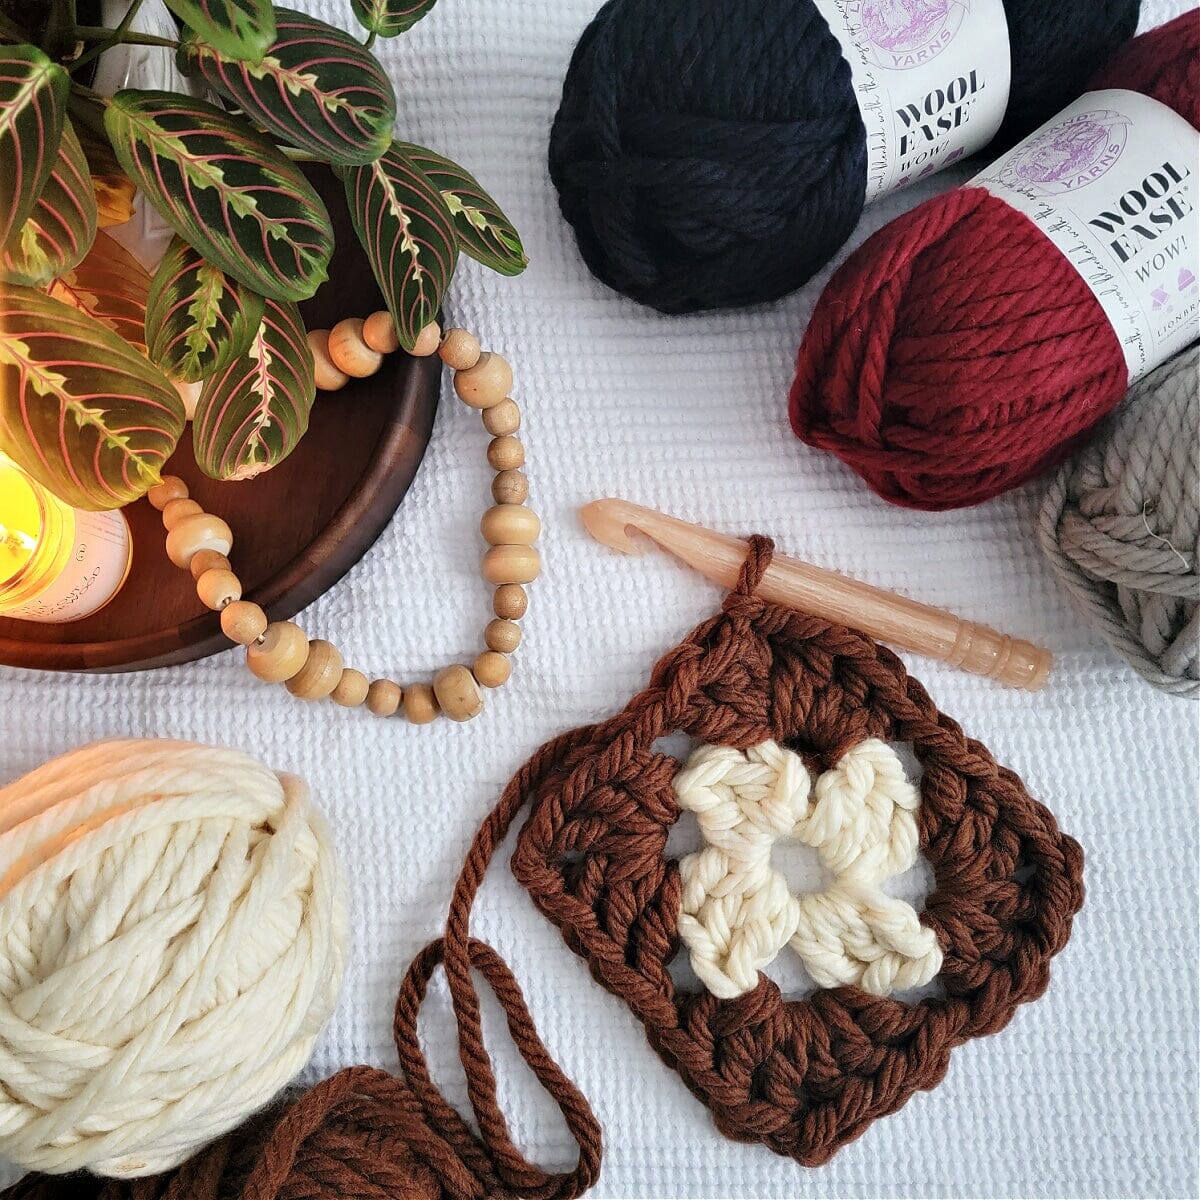 Crochet Hooks - Jones & Vandermeer